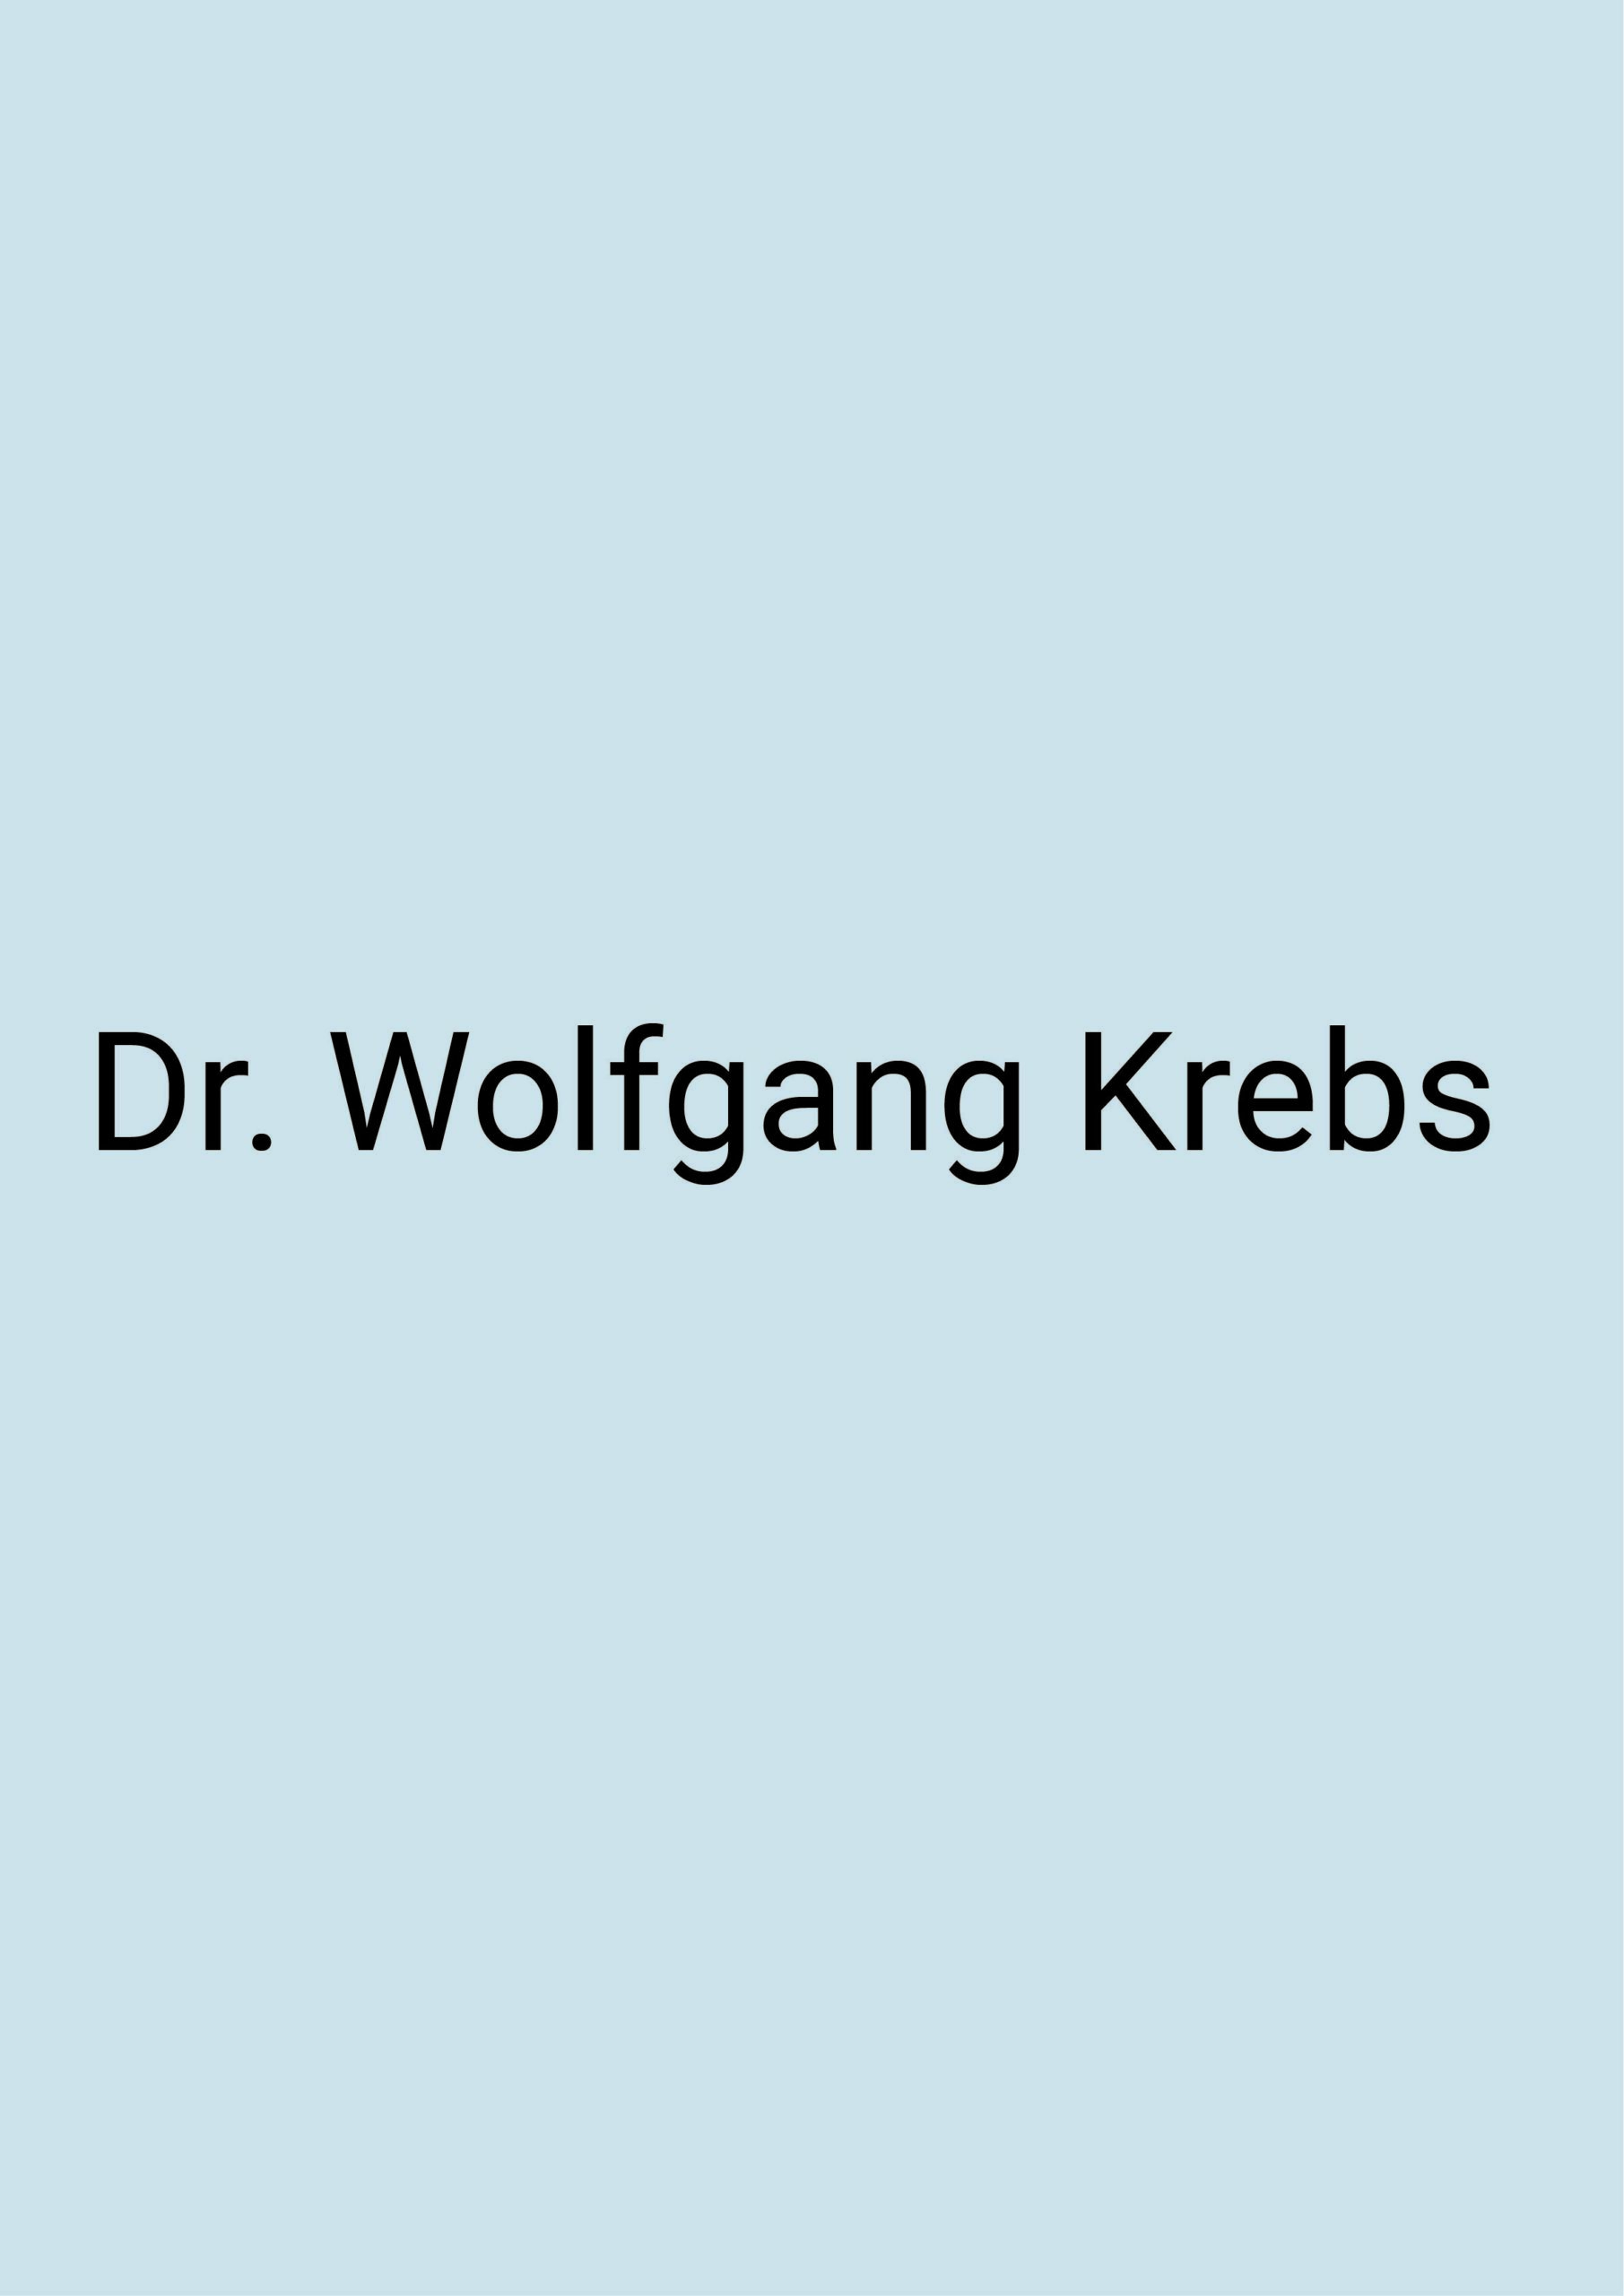 Grafik: blauer Hintergrund, auf dem in schwarzer Schrift „Dr. „Wolfgang Krebs“ geschrieben steht.